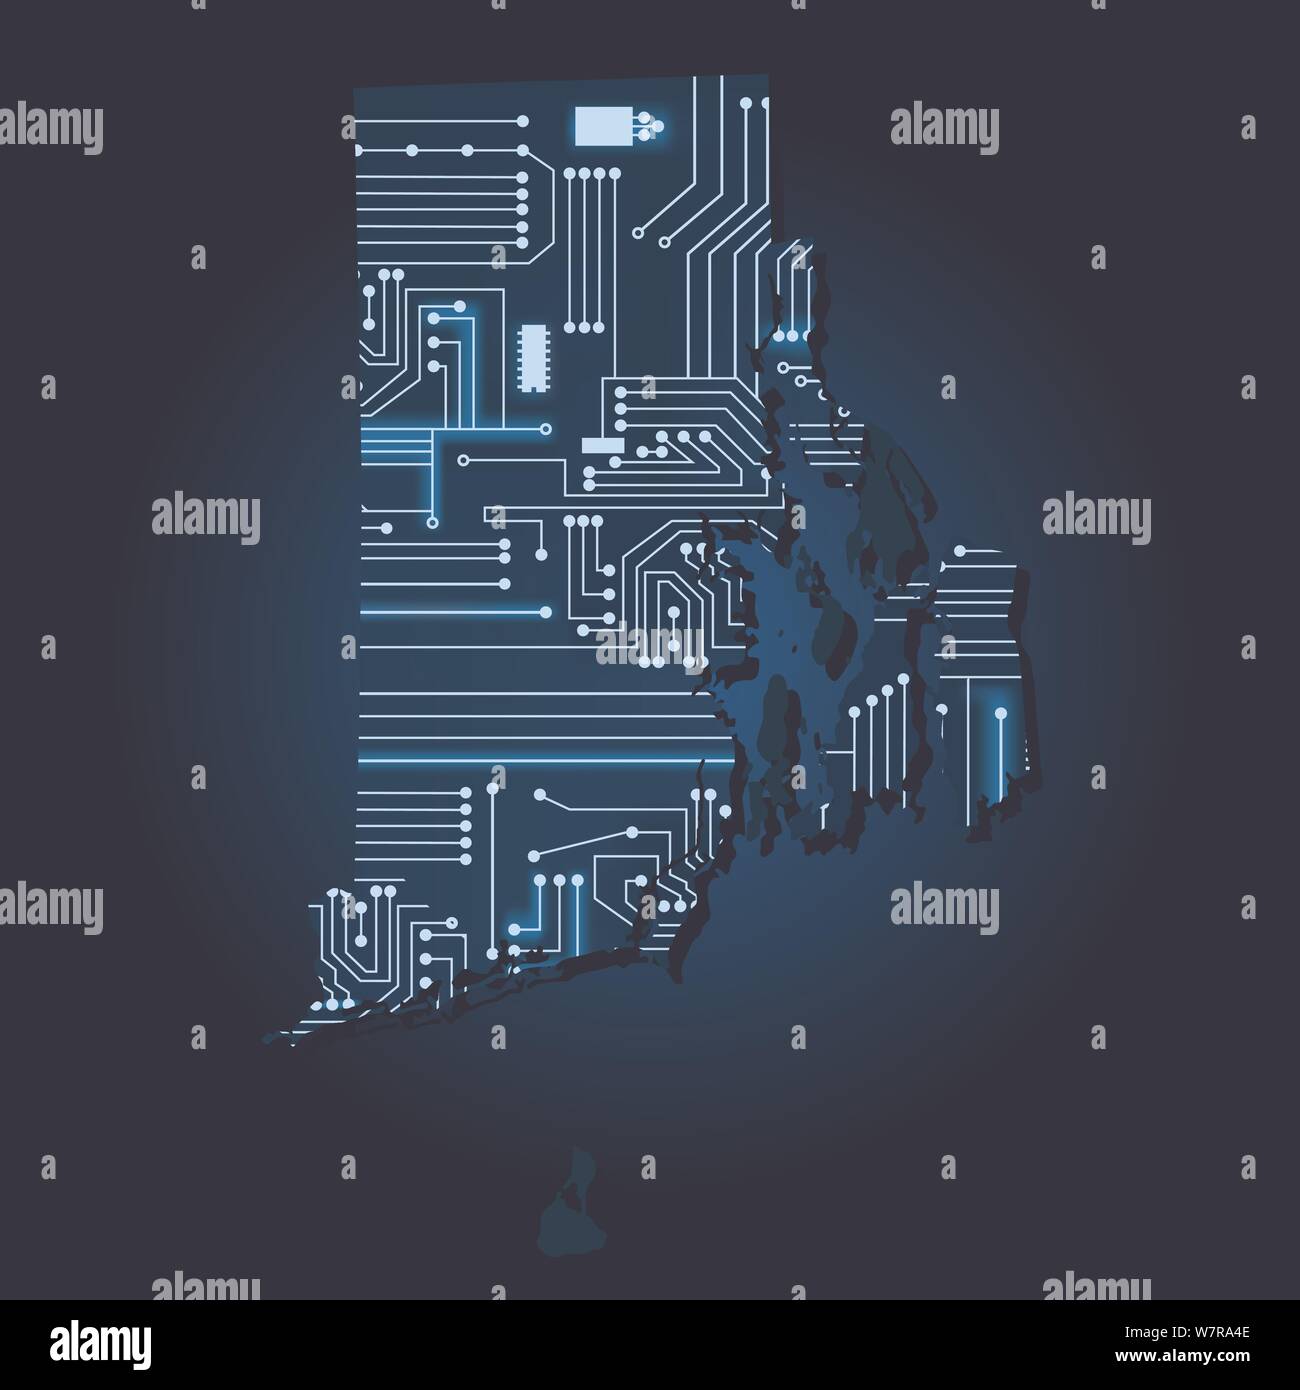 Kontur karte von Rhode Island mit einem Technische Elektronik Schaltung. USA Staat. Blauen Hintergrund. Stock Vektor